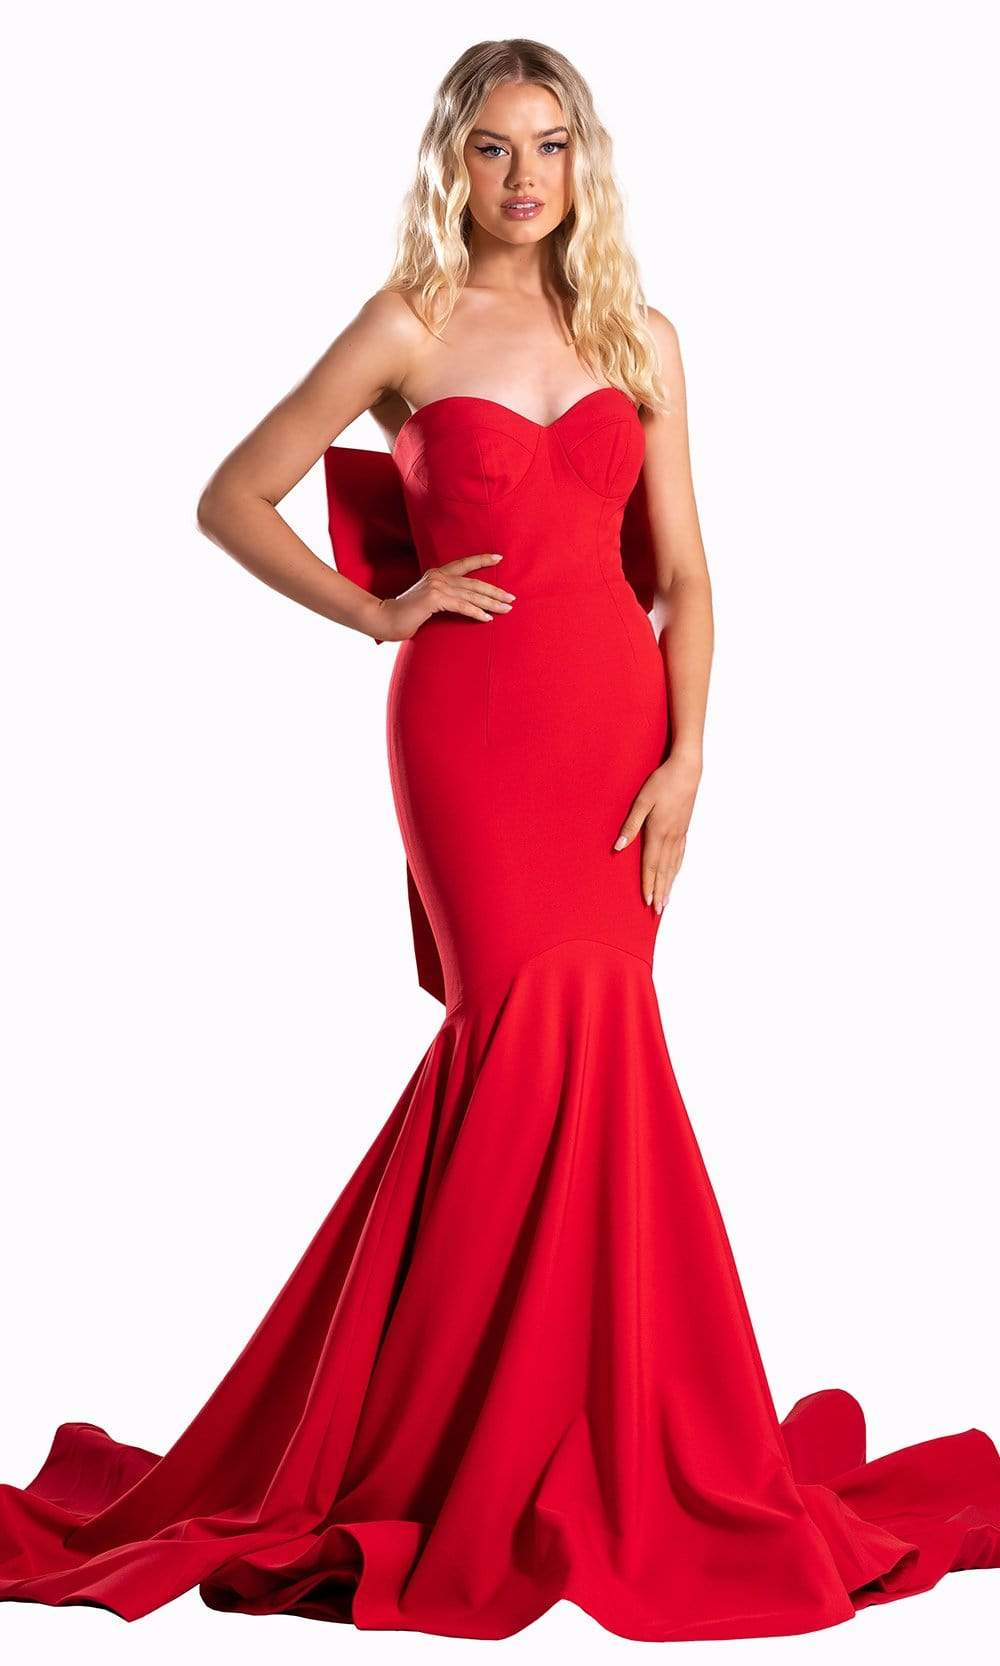 The Scarlet Dress :: Shoulder Bows & Tweed - Color & Chic